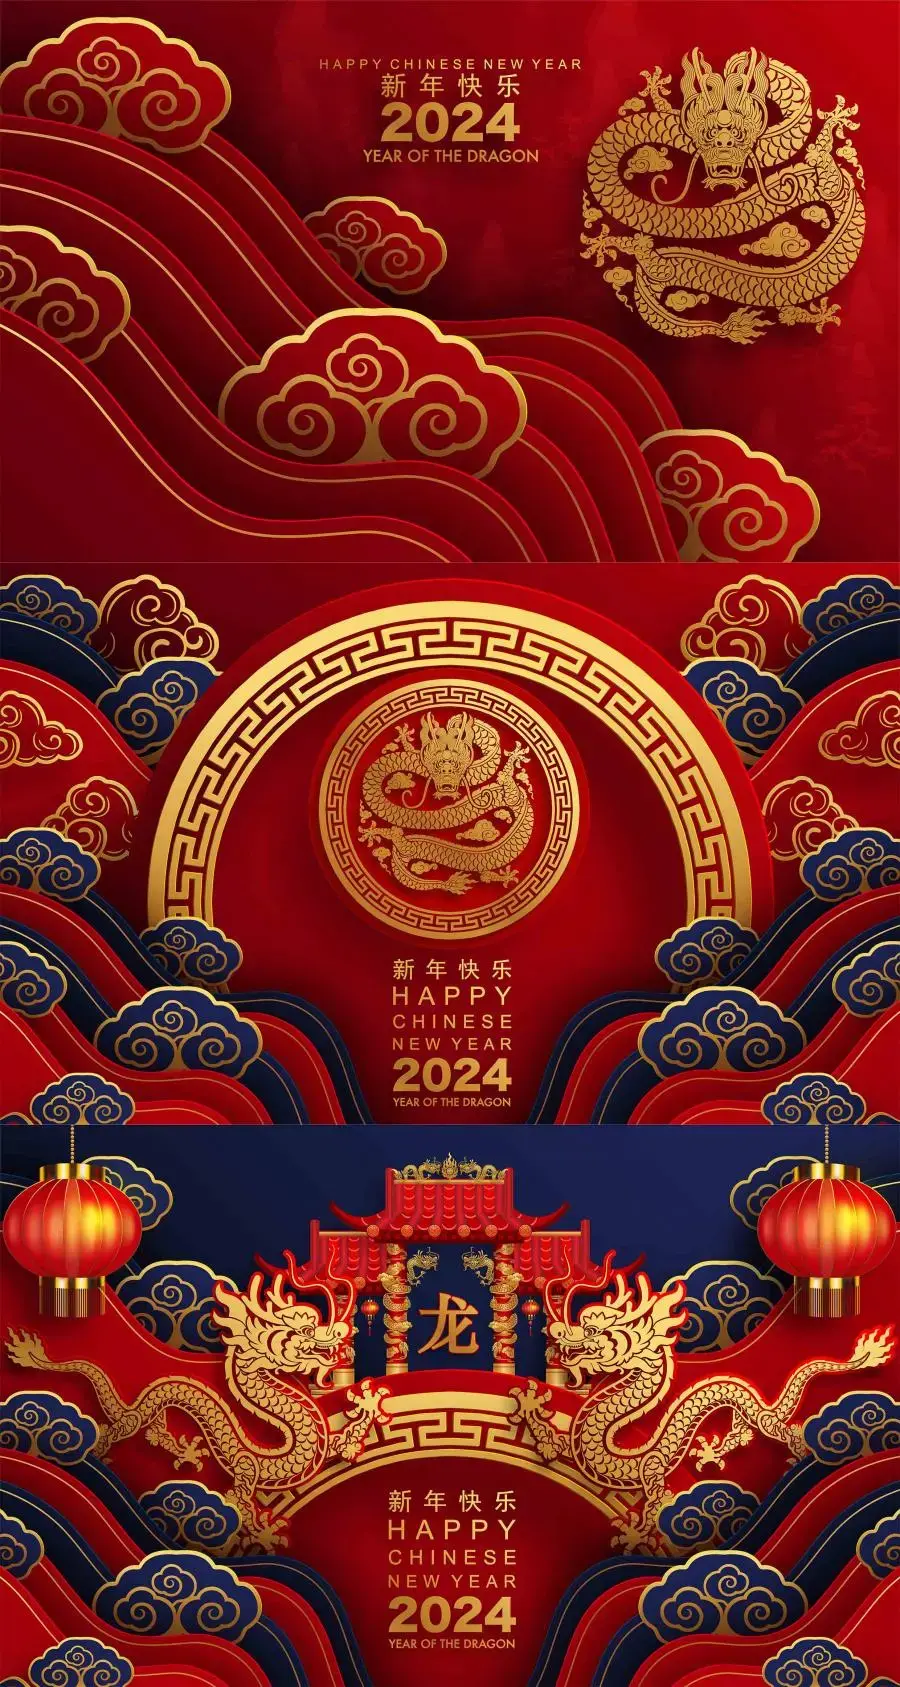 2024龙年春节除夕新年元旦传统龙底纹背景海报EPS矢量图设计素材-爱设计爱分享c